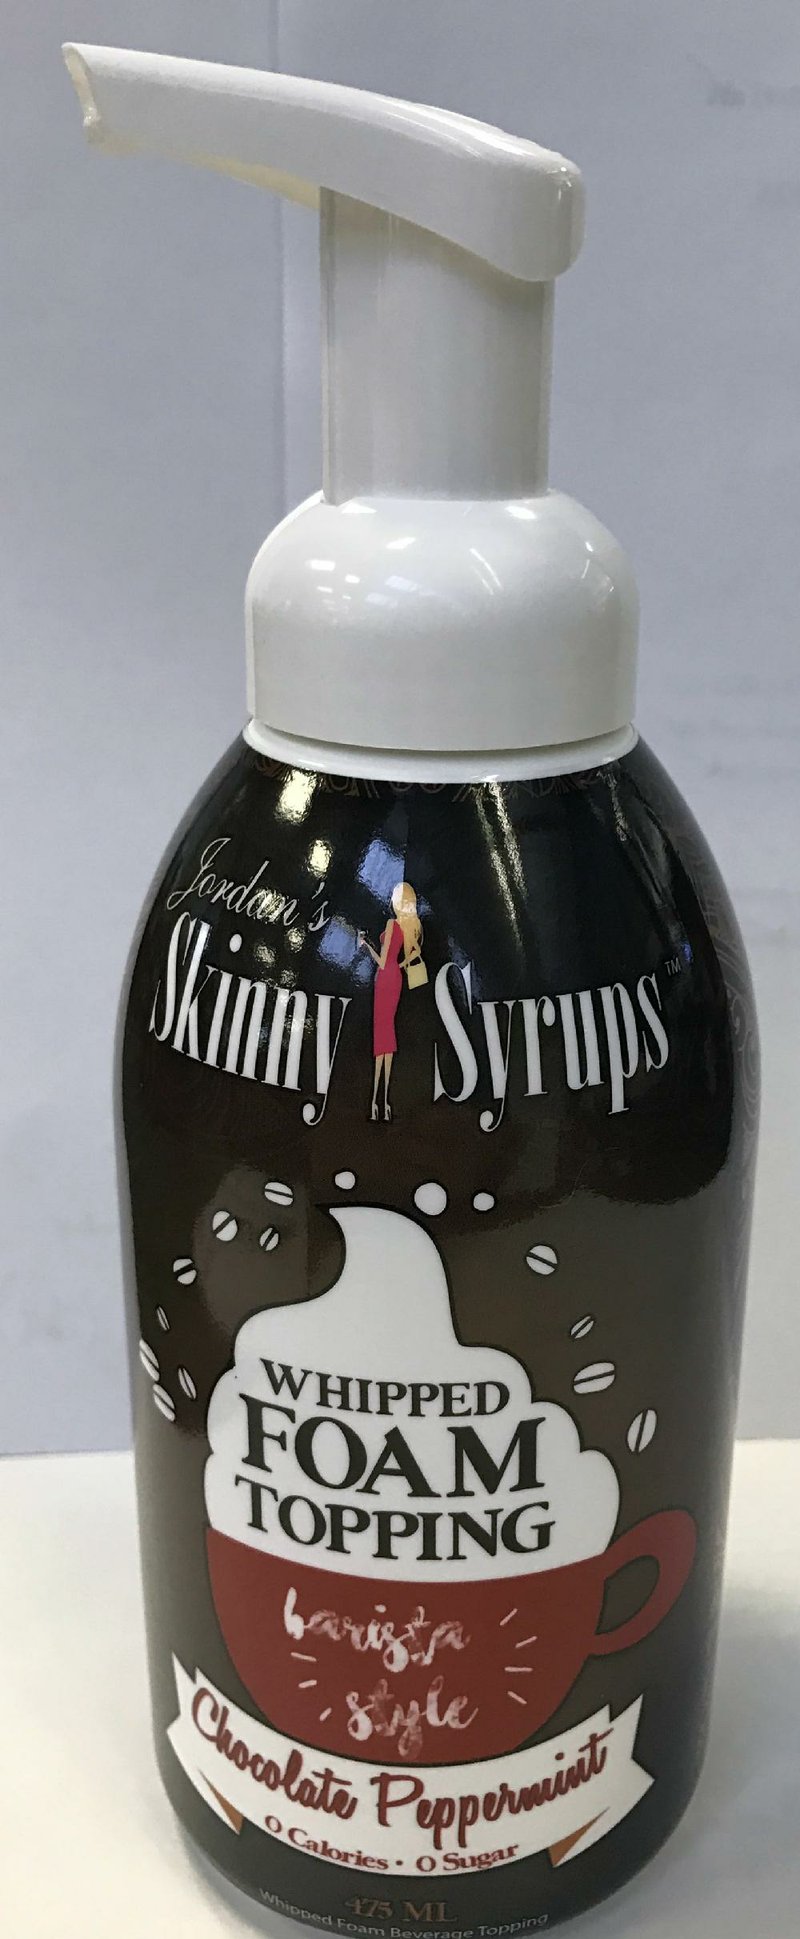 Jordan’s Skinny Syrups